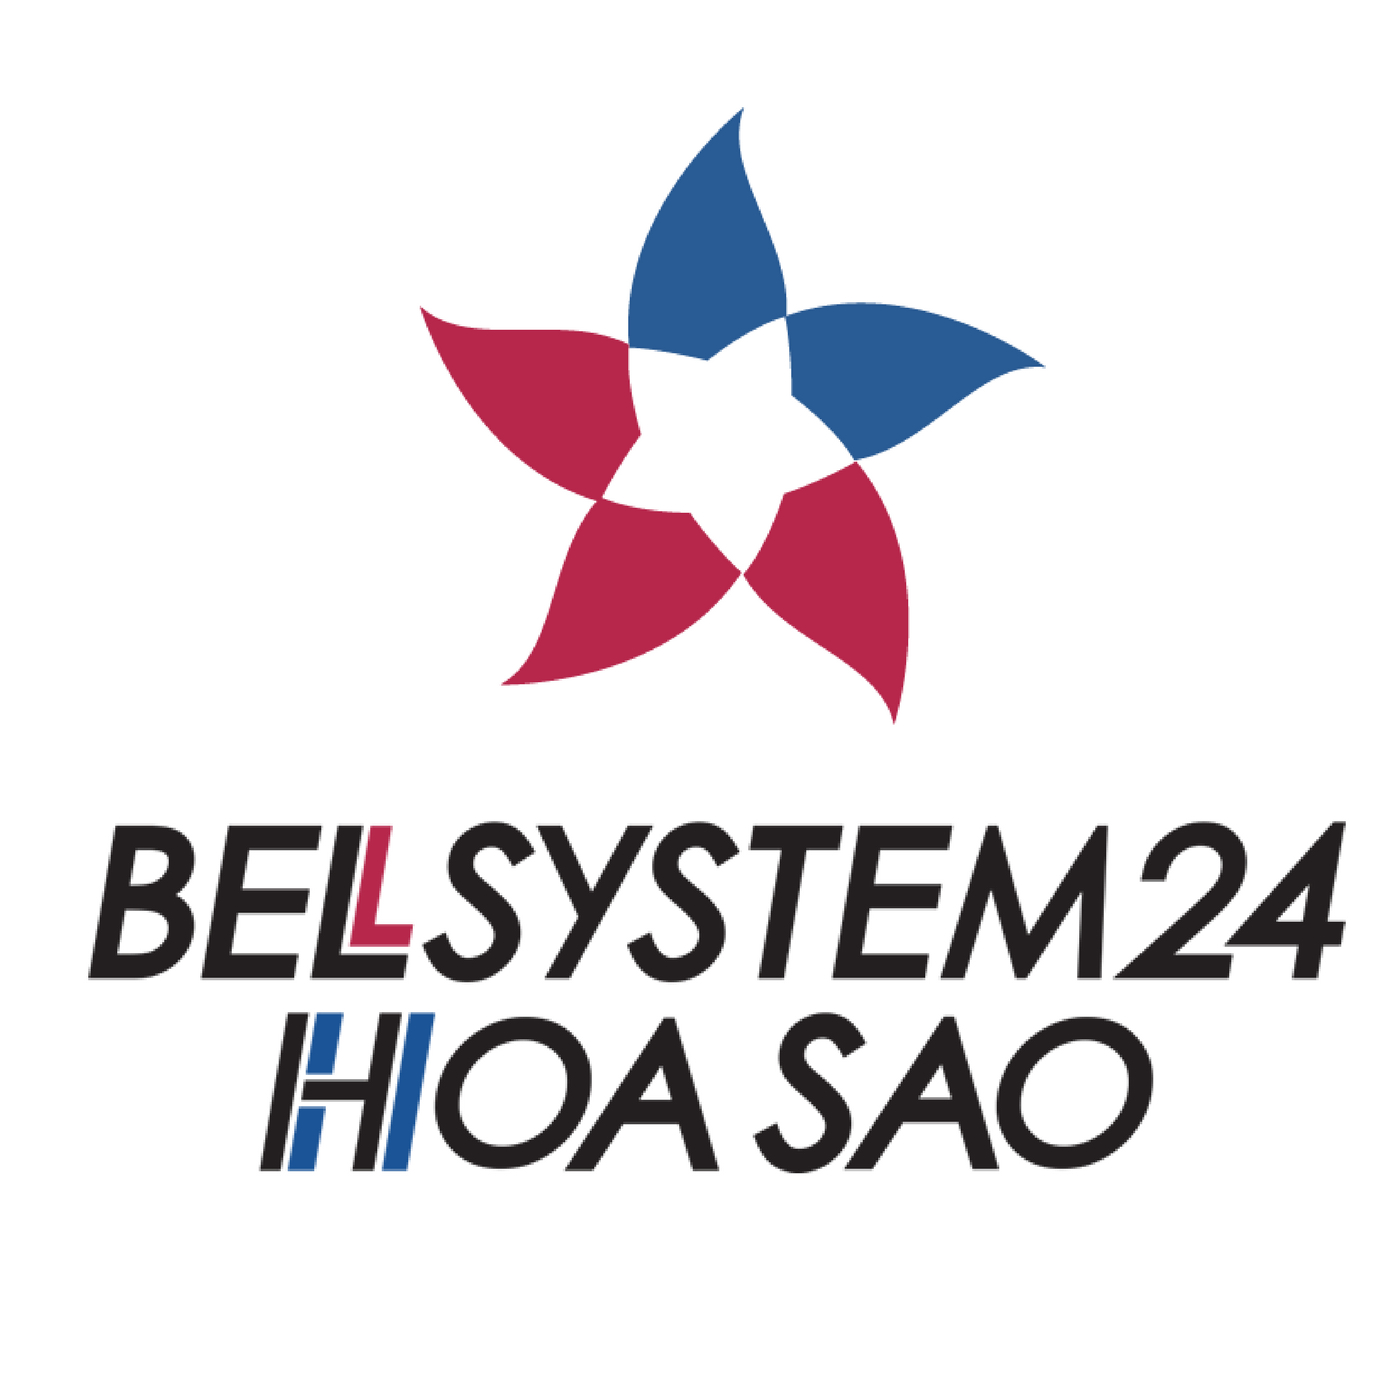 BELLSYSTEM24-HOASAO tuyển dụng việc làm IT mới và tốt nhất | TopDev